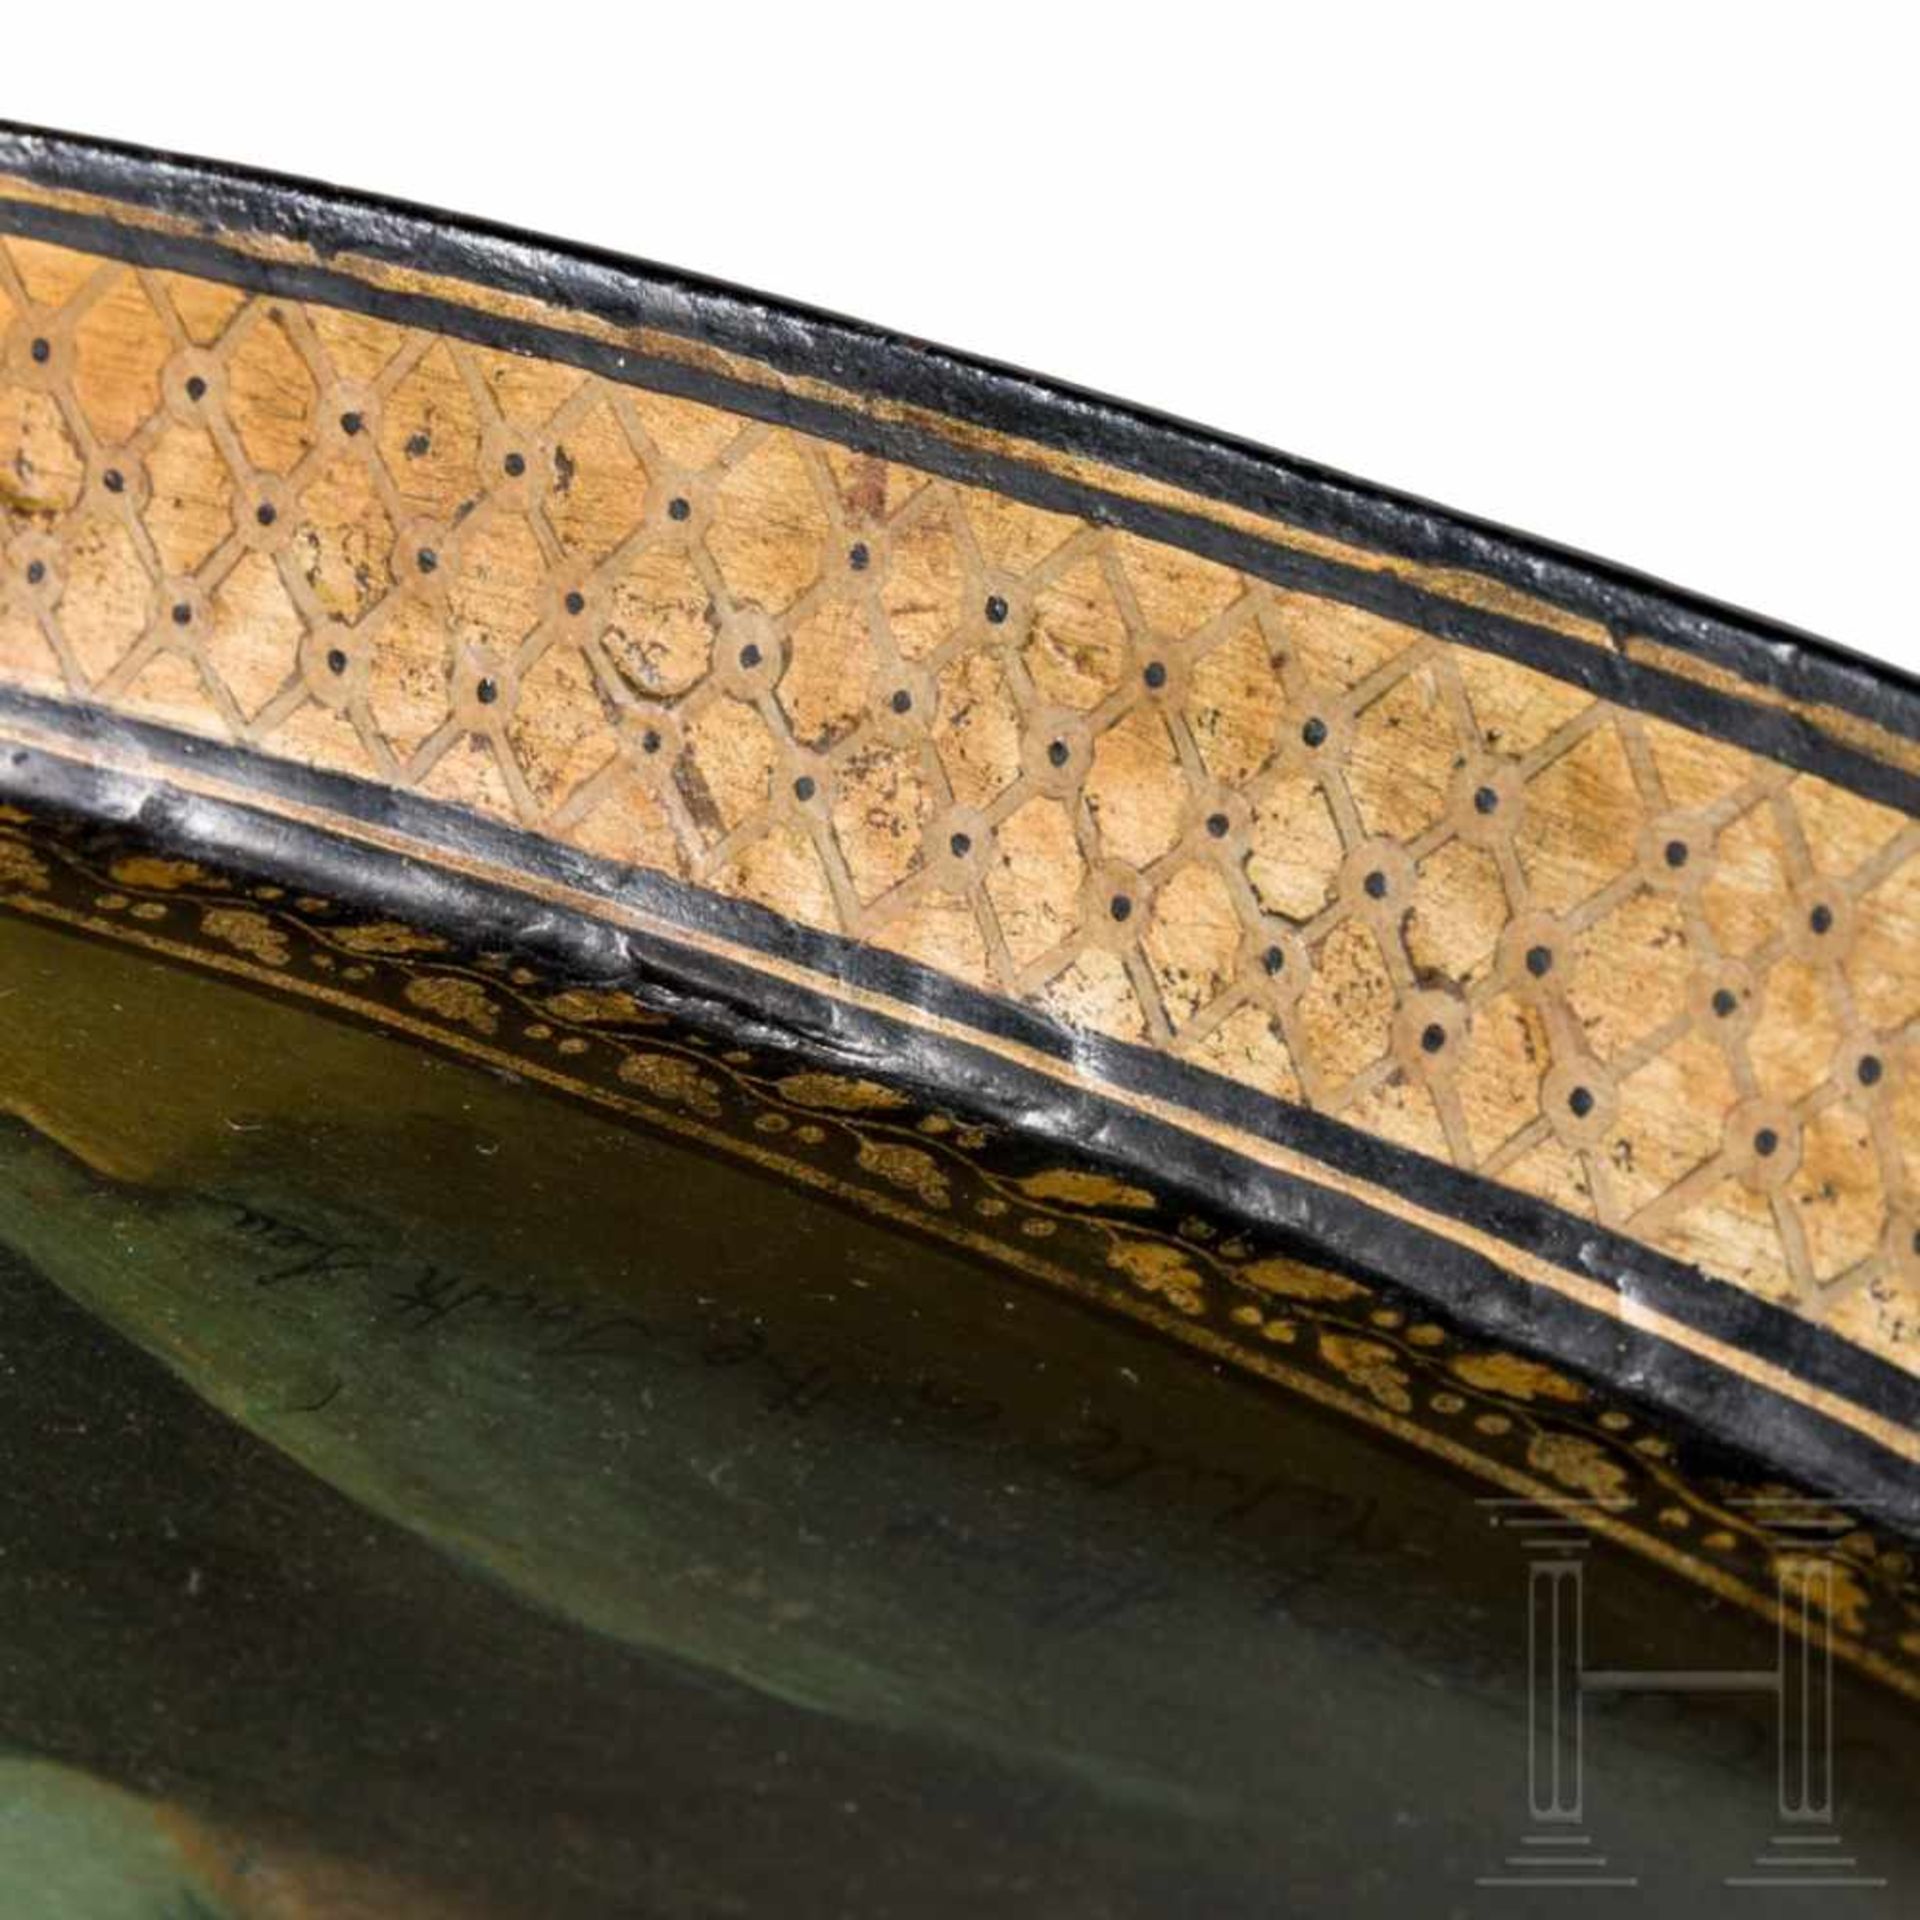 Großes klassizistisches Tablett mit feiner Malerei in der Art der Manufaktur Stobwasser, wohl - Bild 4 aus 5